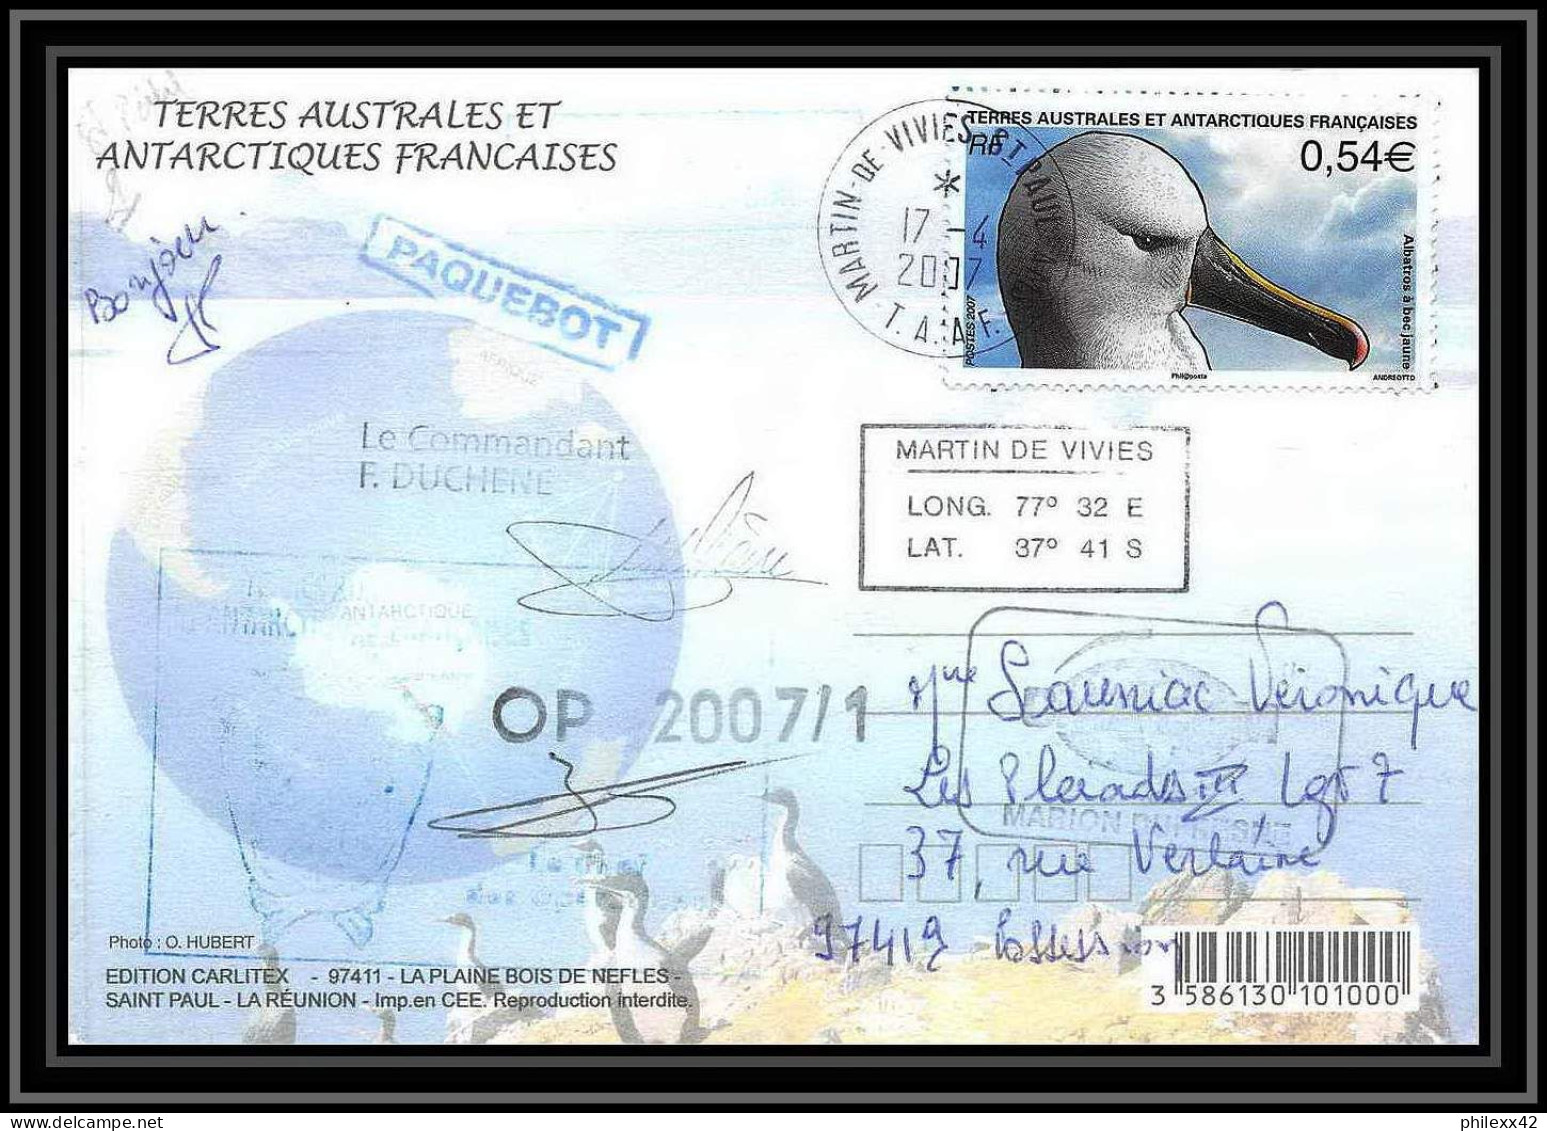 2756 ANTARCTIC Terres Australes (taaf)-carte Postale Dufresne 2 Signé Signed Op 2007/1 N°467 ST PAUL 17/4/2007 - Briefe U. Dokumente